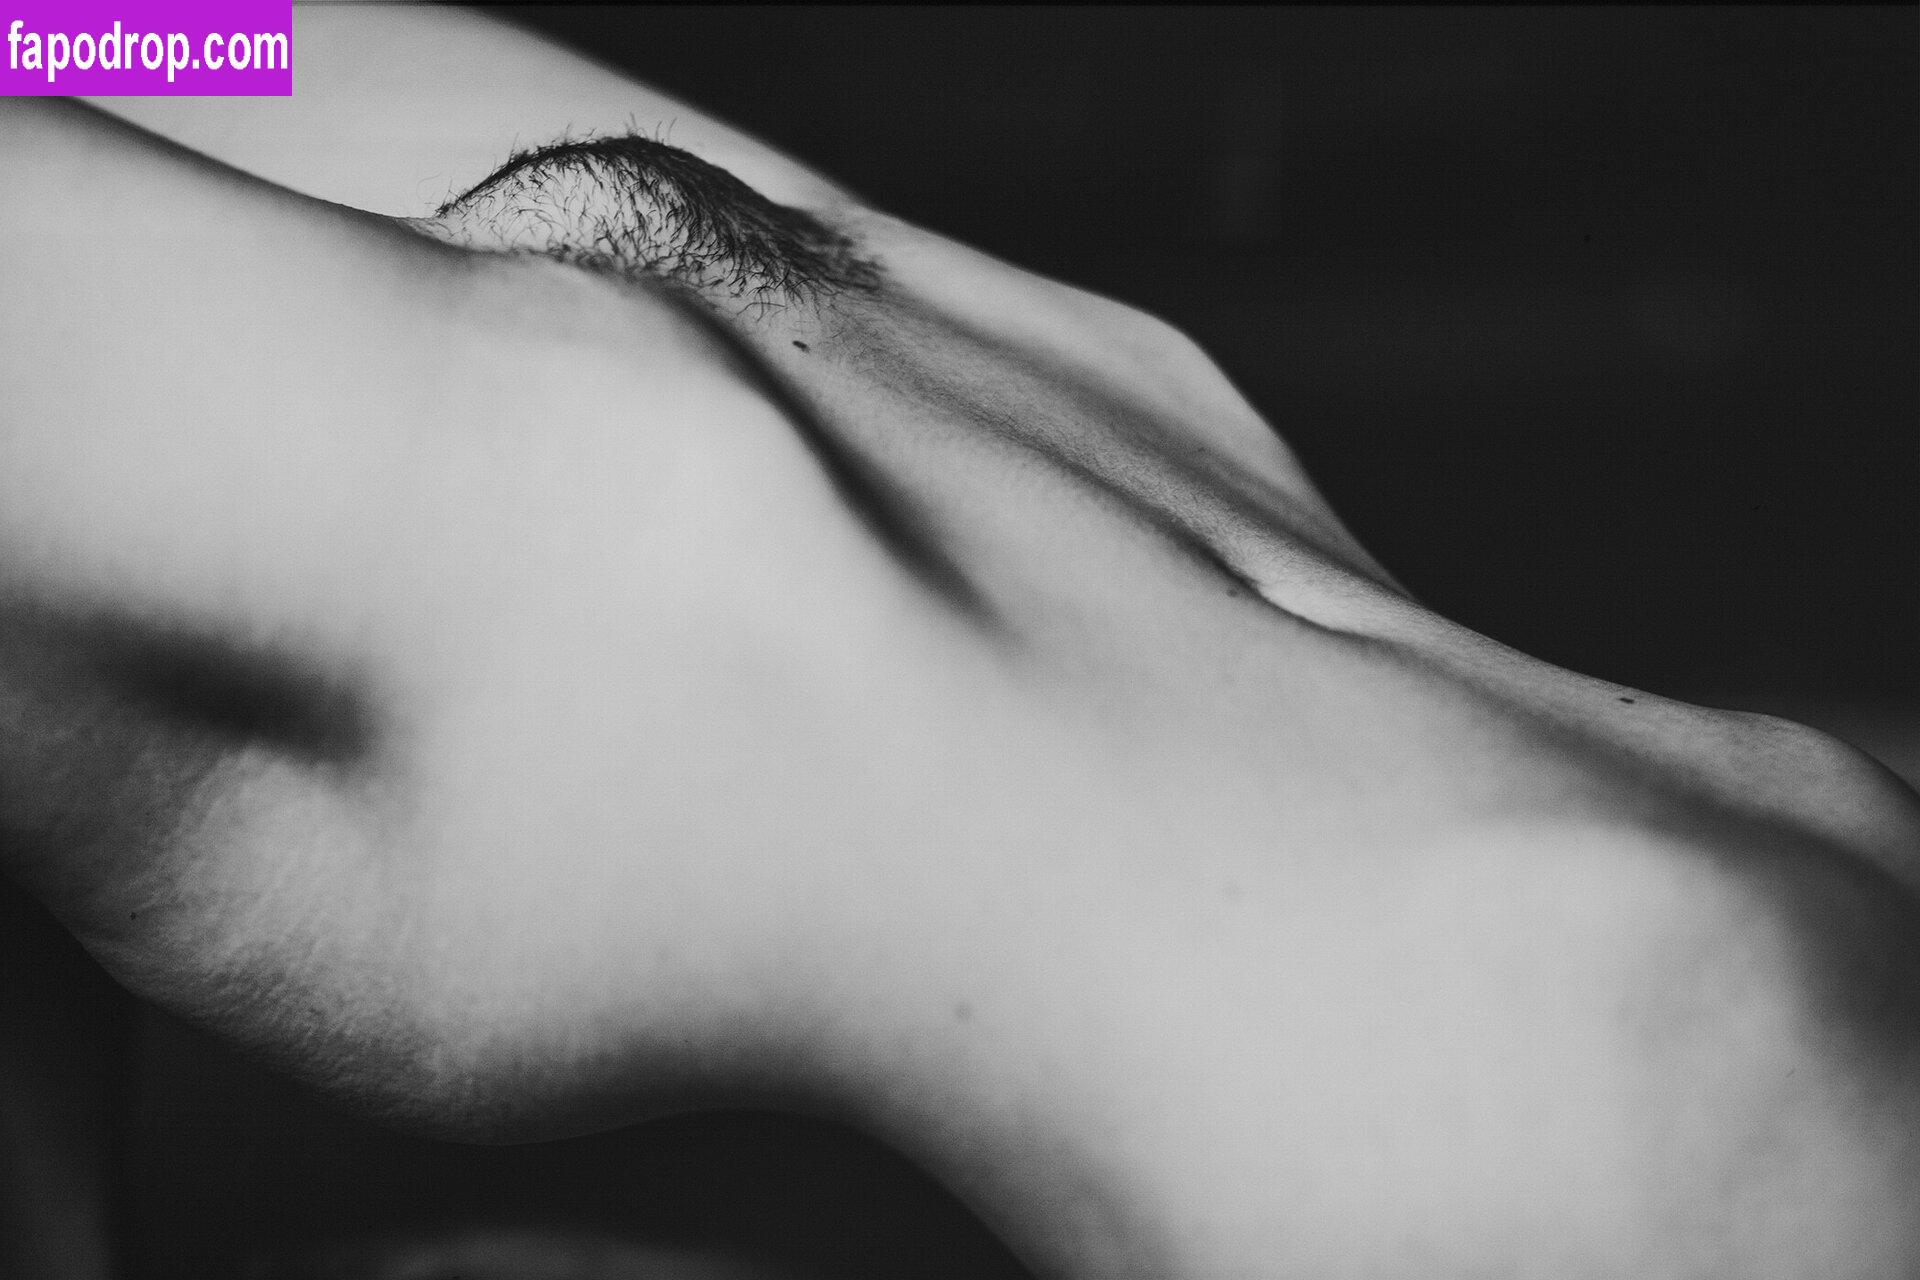 Alisa Volkova / A_Irrational / alisavolkova_art leak of nude photo #0028 from OnlyFans or Patreon